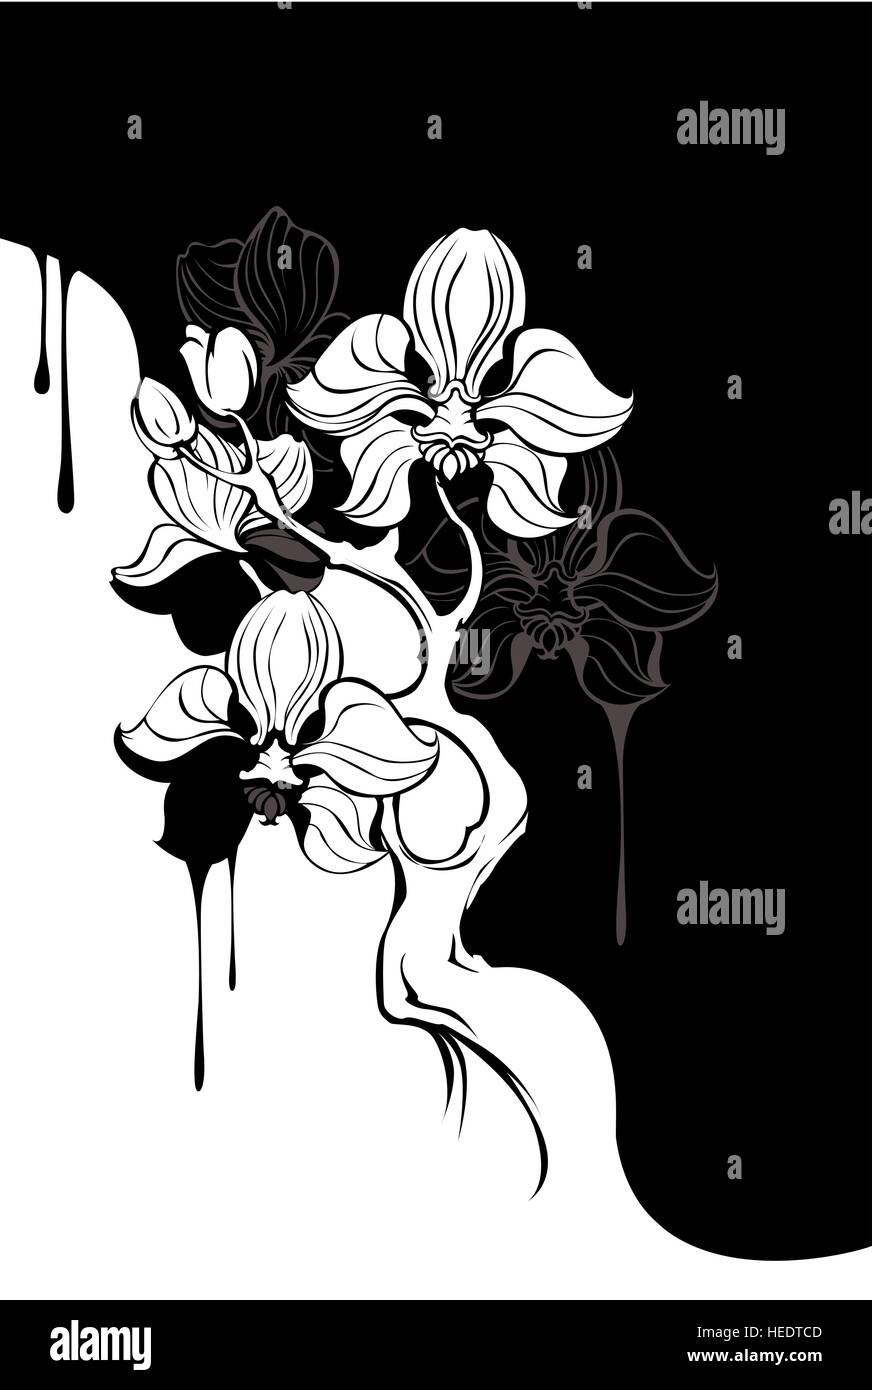 Succursale de noir et blanc, peint artistiquement orchid sur fond sombre. Illustration de Vecteur